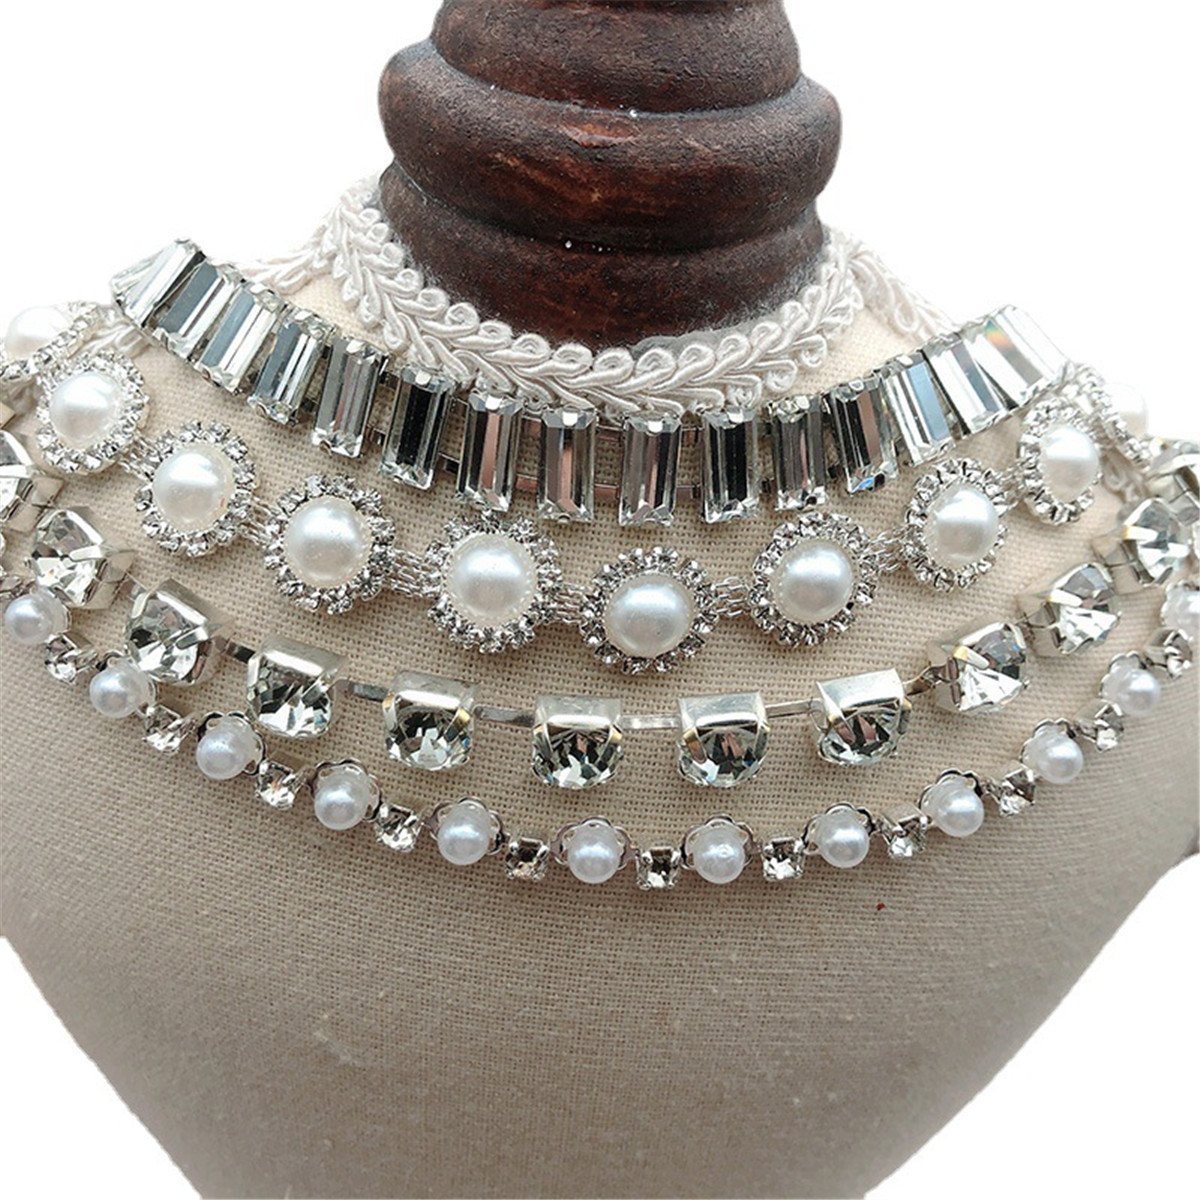 Rhinestone Trim Pearls and Diamonds Crystal Chain 1 Yard Rhinestones Pearl Chain